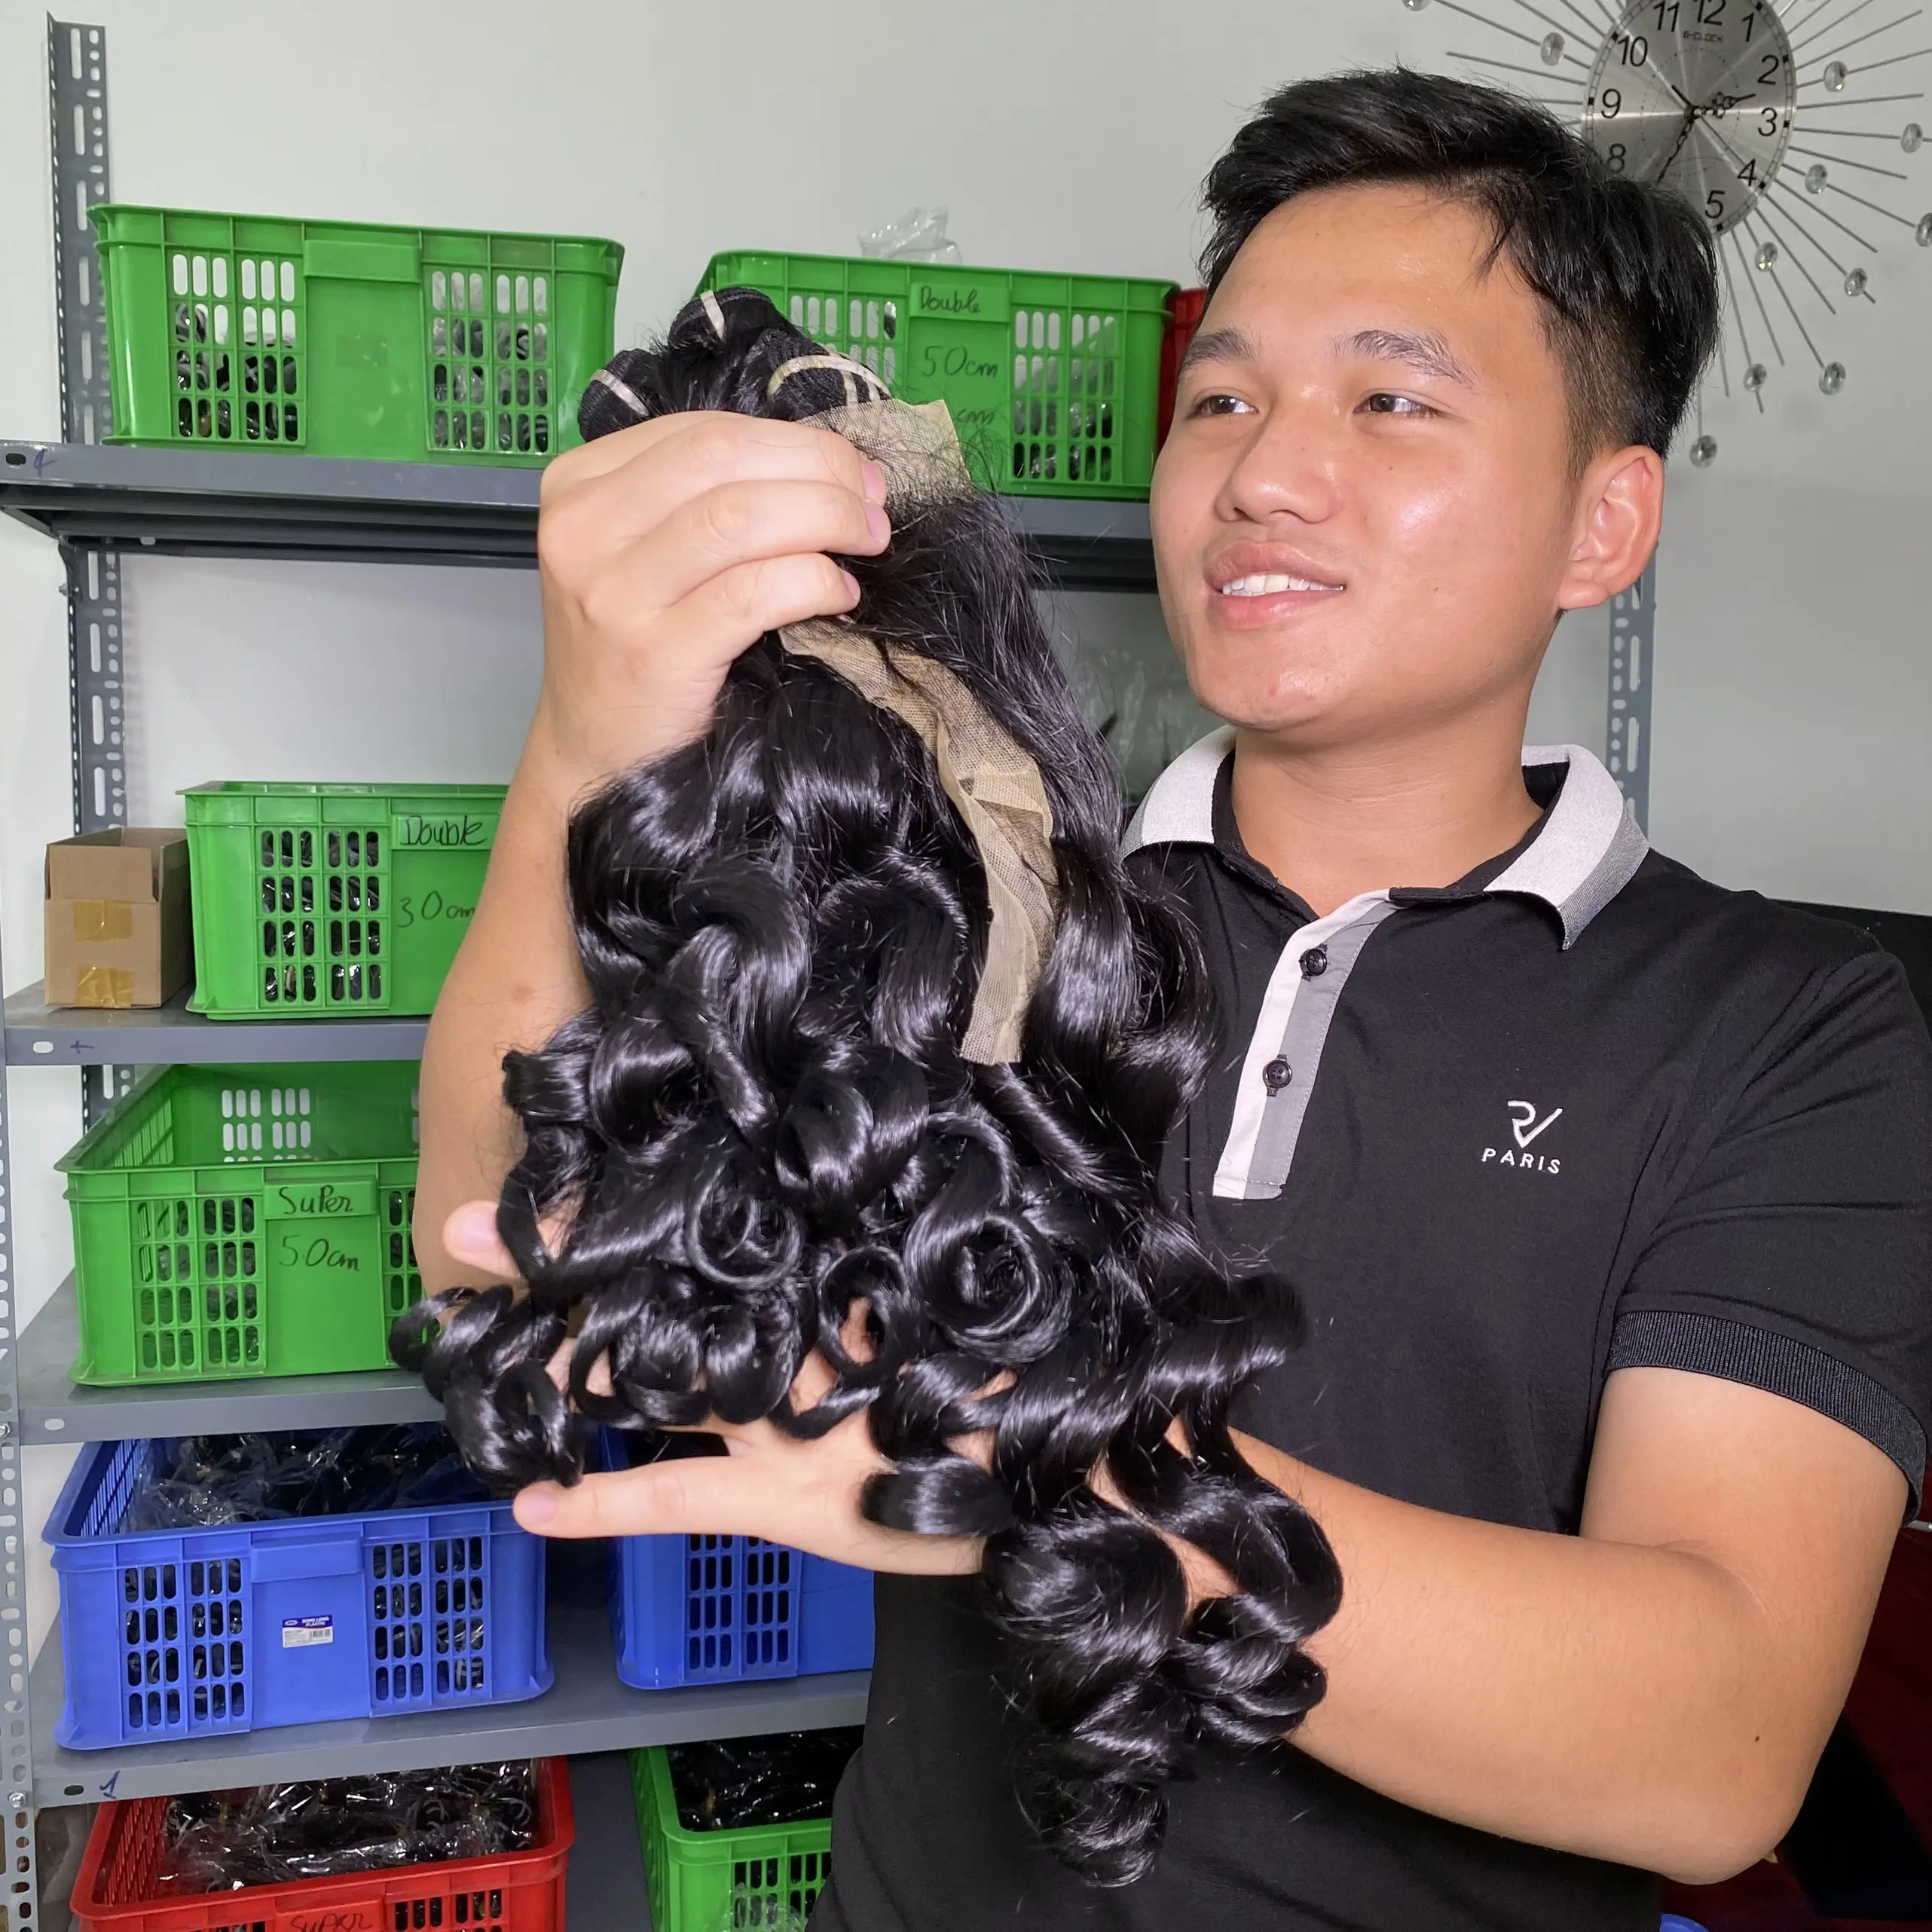 일치하는 레이스 클로저와 슈퍼 더블 그린 바다 물결 모양의 번들 씨실 이미 만든 가발 Azhair 베트남 회사